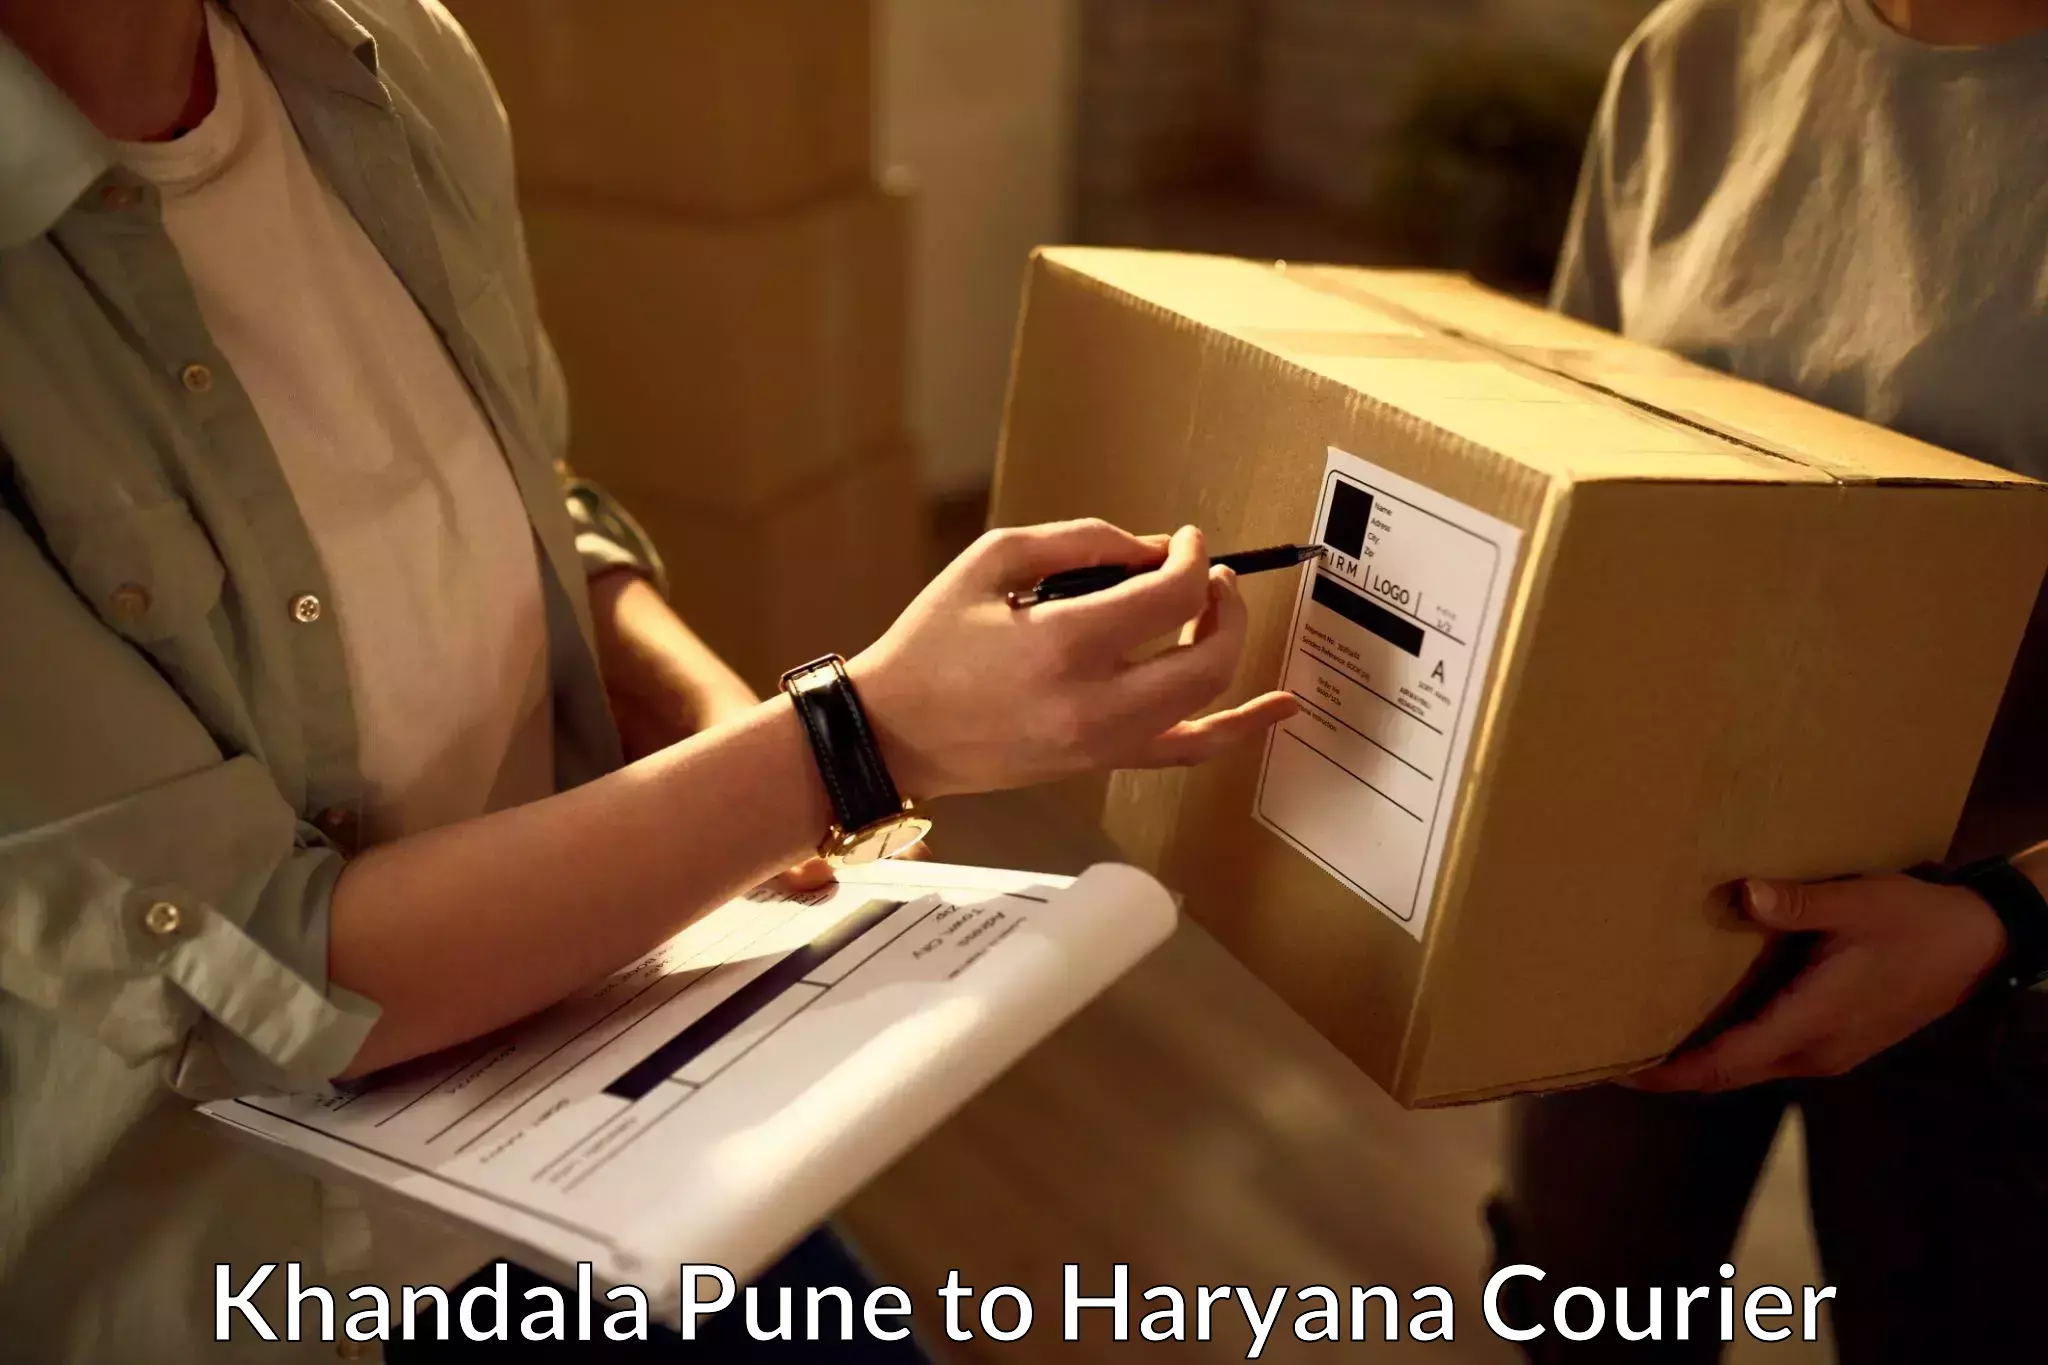 Cost-effective courier solutions Khandala Pune to IIIT Sonepat